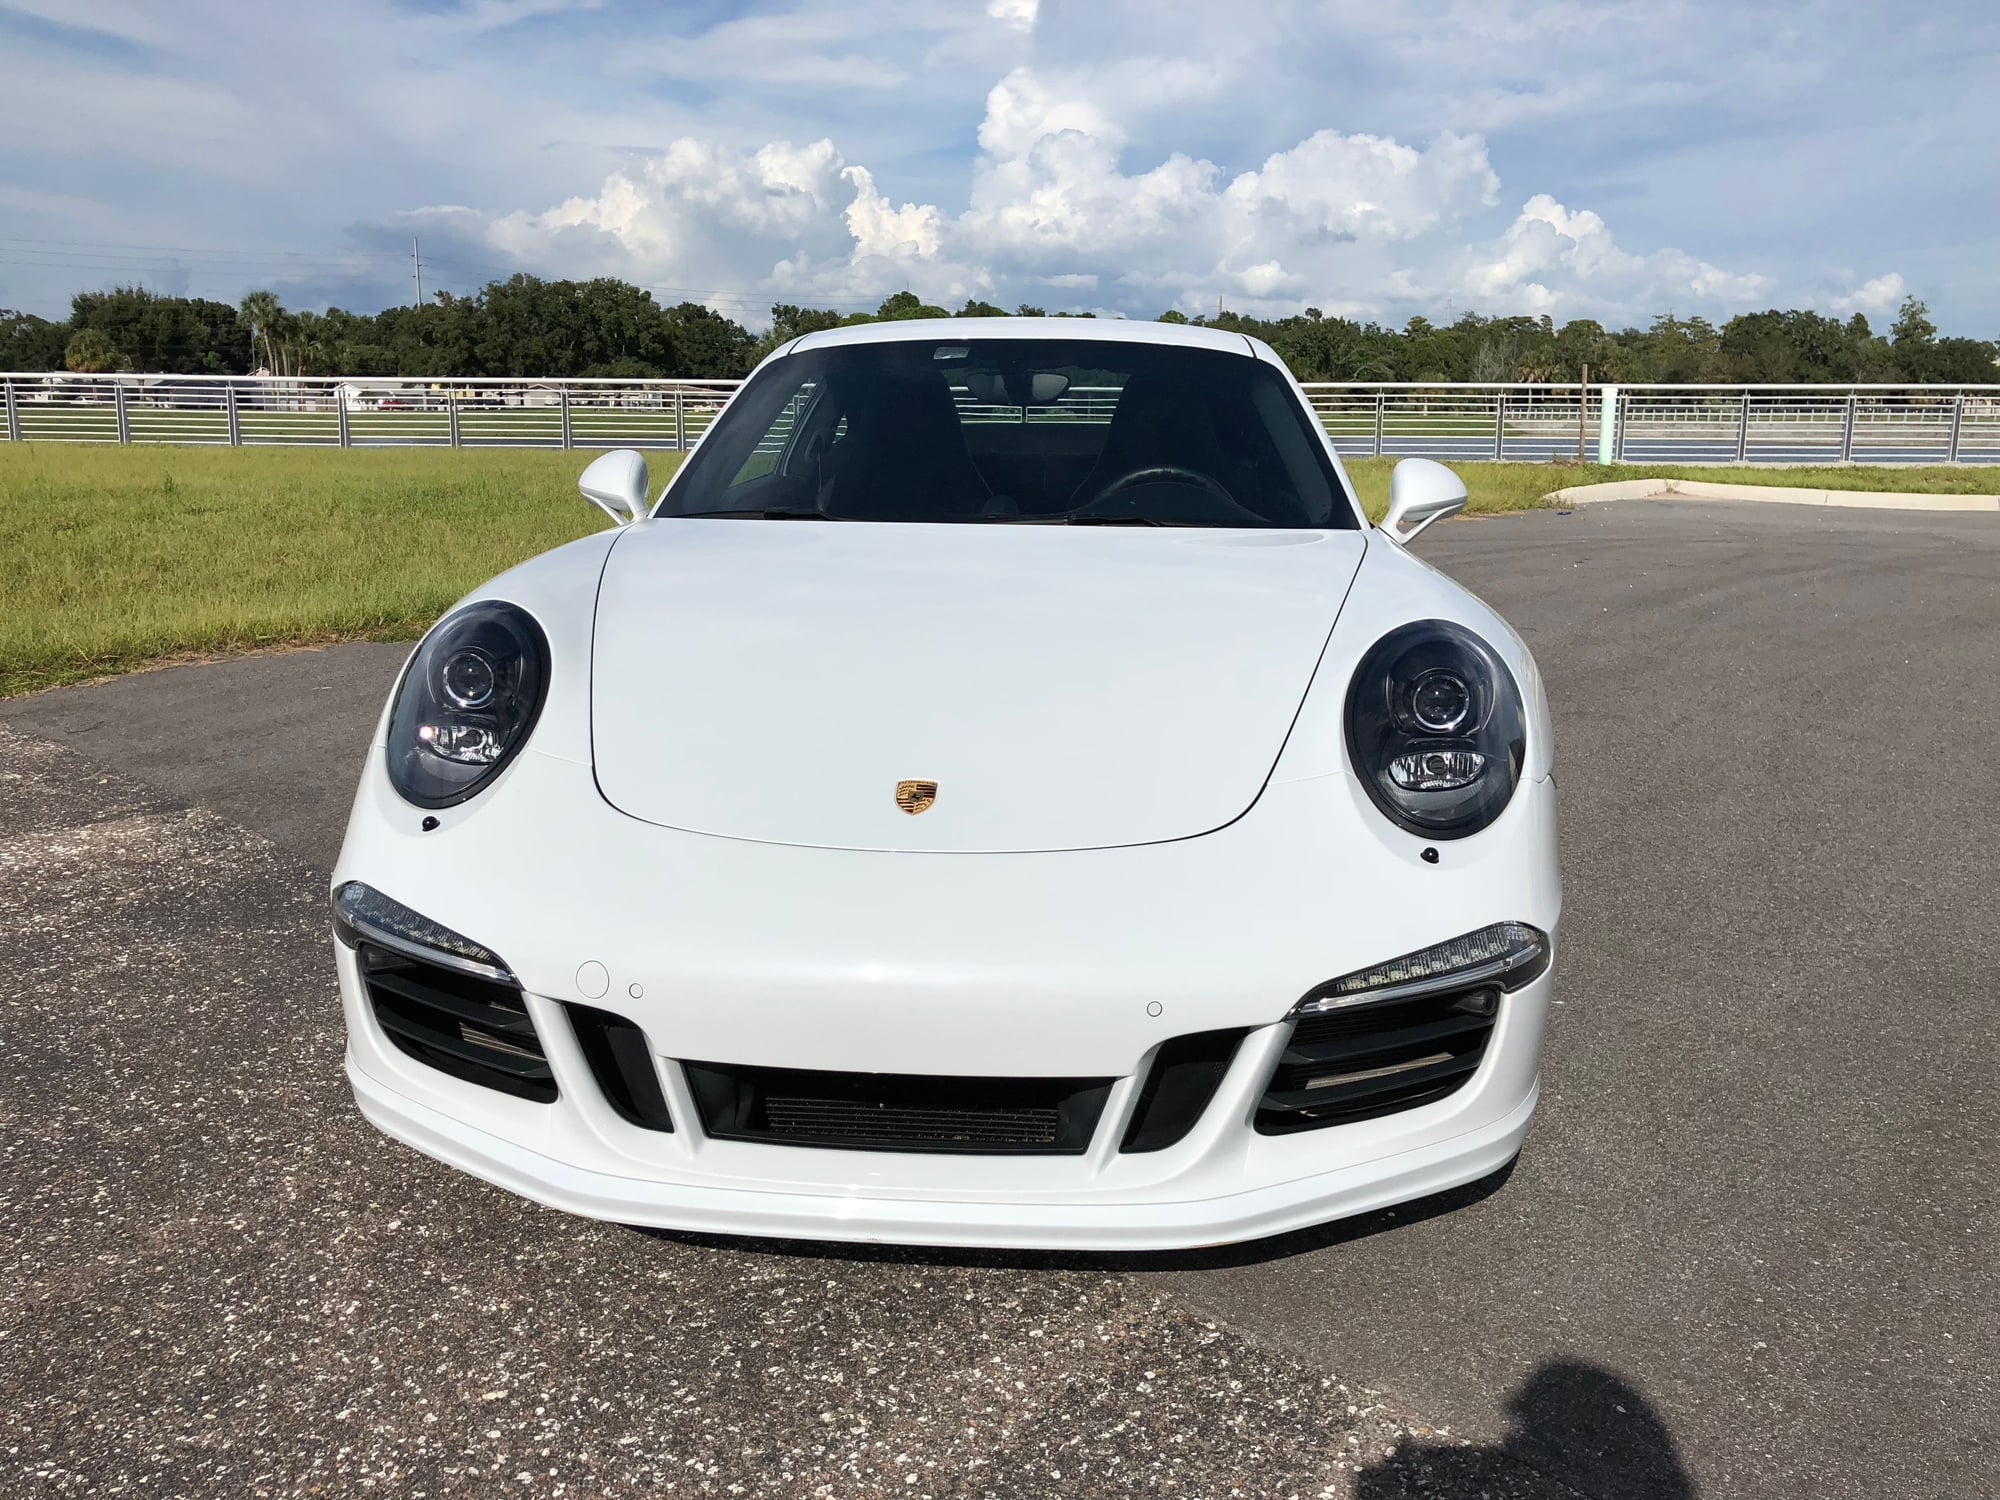 2015 Porsche 911 - 2015 Porsche 911 Carrera GTS PDK Carrera White - CPO - Used - VIN WP0AB2A92FS125778 - 14,500 Miles - 6 cyl - 2WD - Automatic - Coupe - White - Tampa, FL 33601, United States